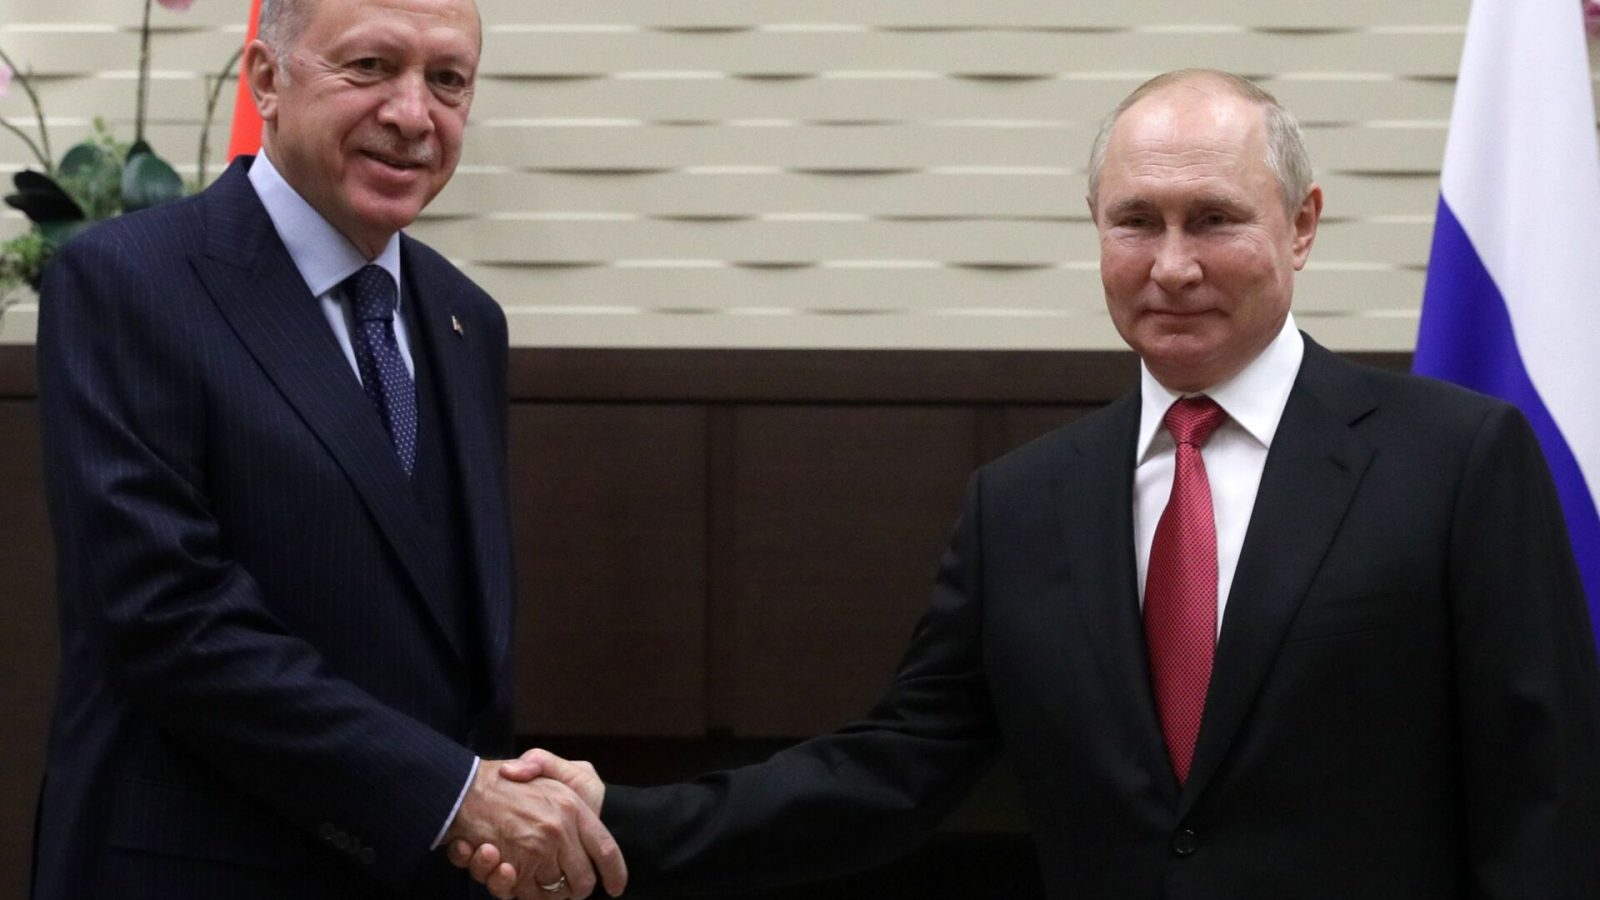 فيديو/ محادثة طريفة لدى استقبال بوتين لأردوغان